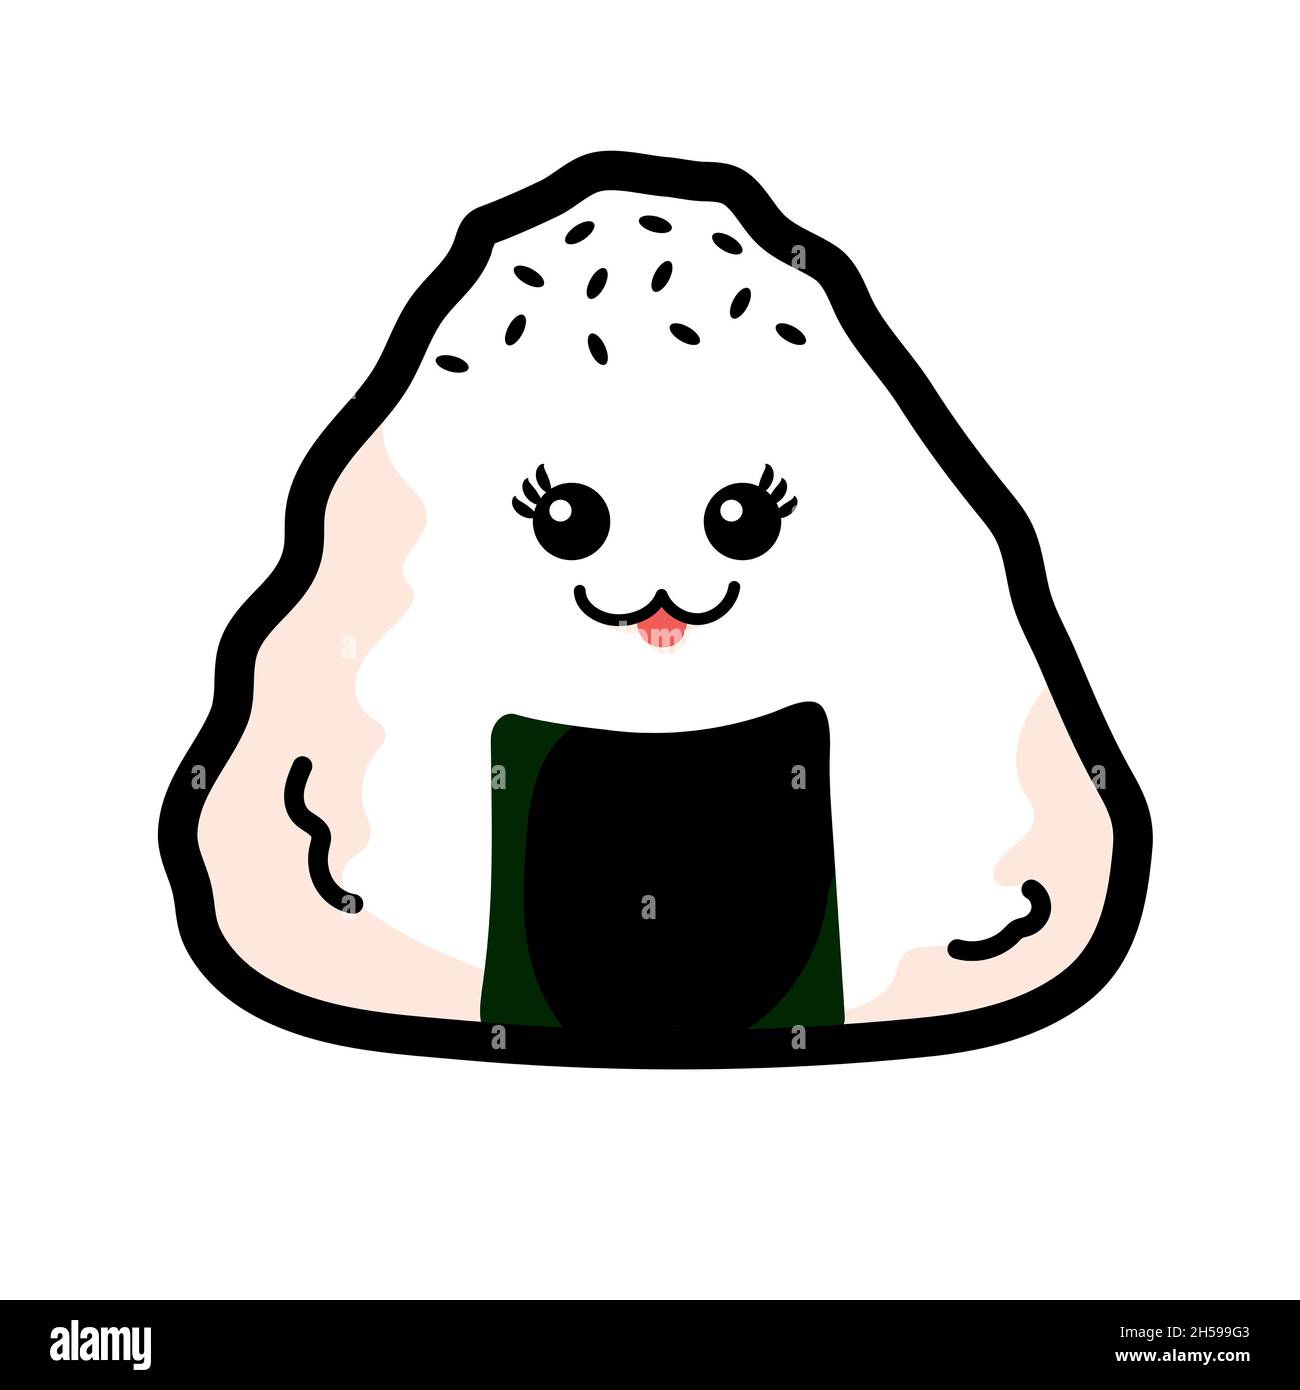 Onigiri isolé ou Triangle de riz japonais sur fond blanc, mignon Onigri dessin animé avec visage, graines de sésame noir et algues. Banque D'Images